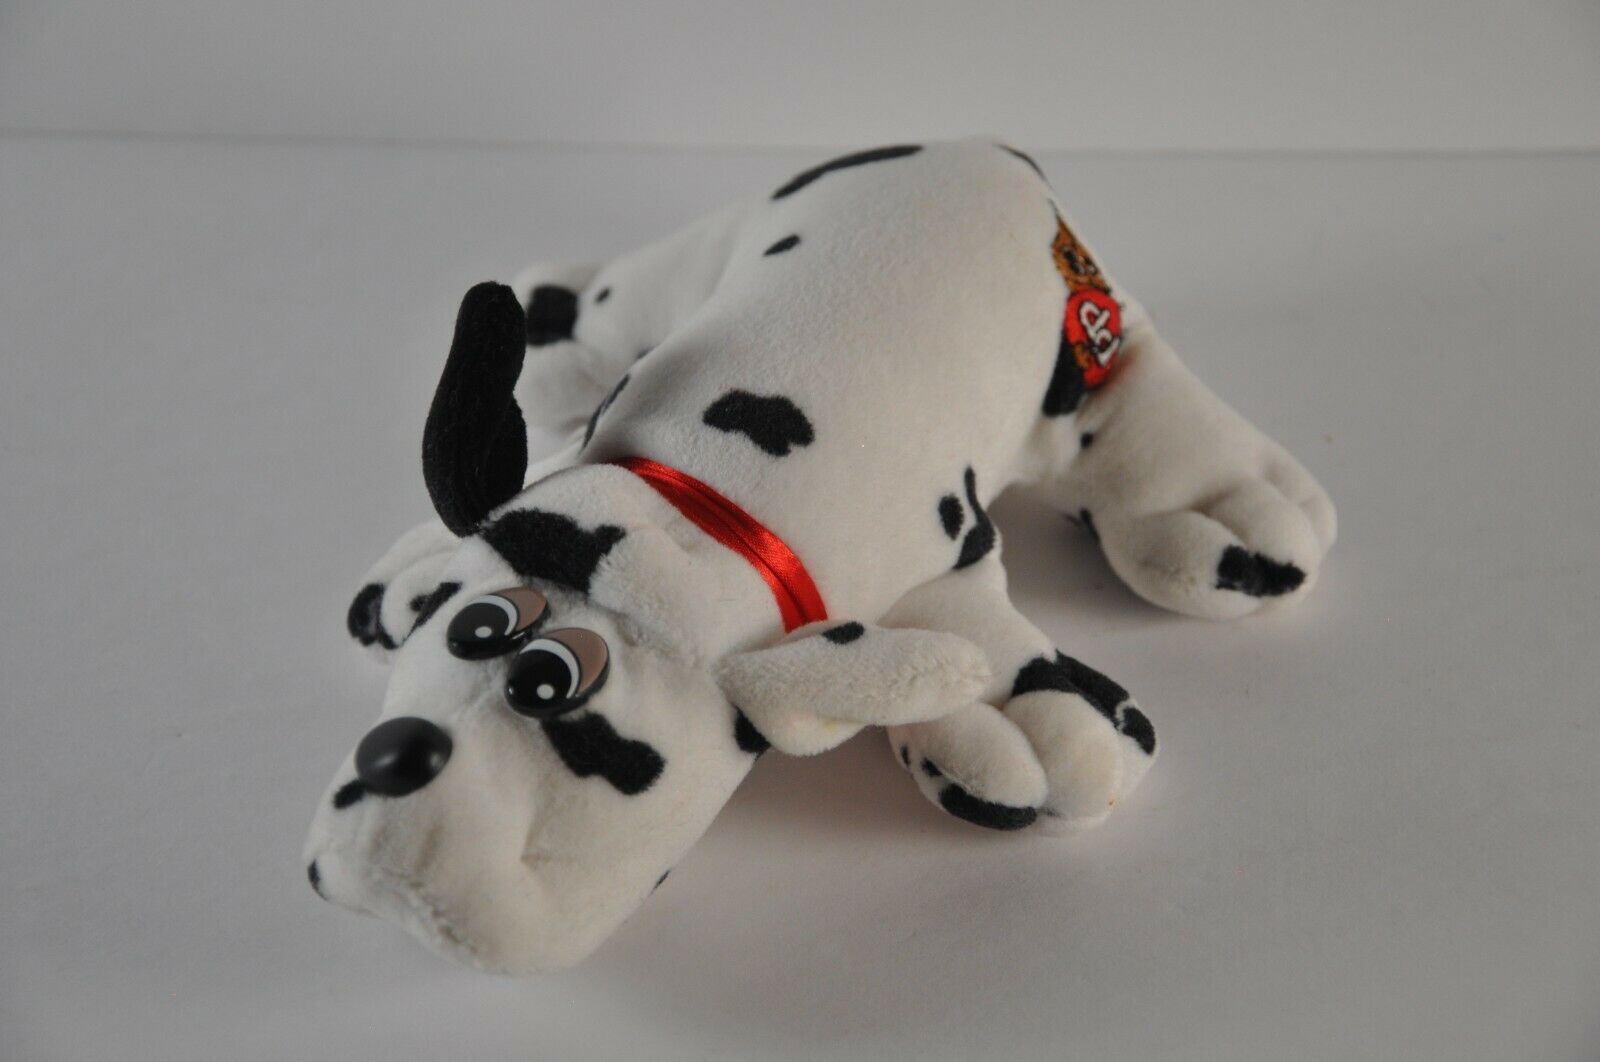 Pound Puppies 7" Black & White Dalmatian Spots Puppy Plush Animal Tonka Vintage